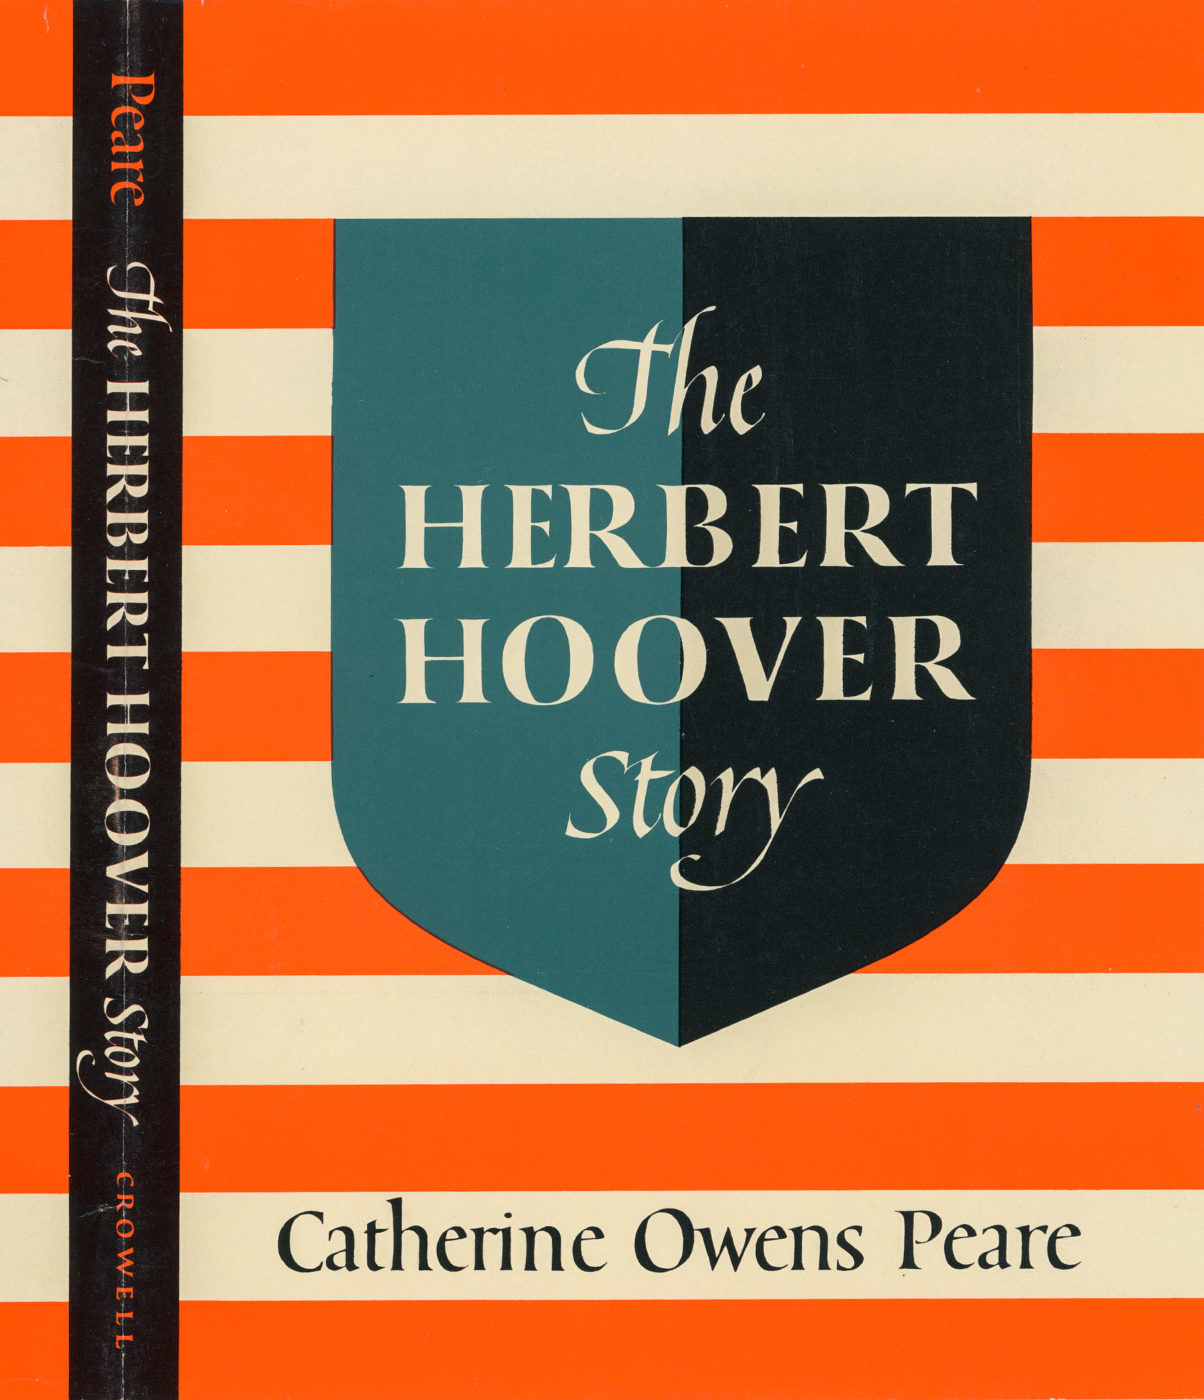 The Herbert Hoover Story